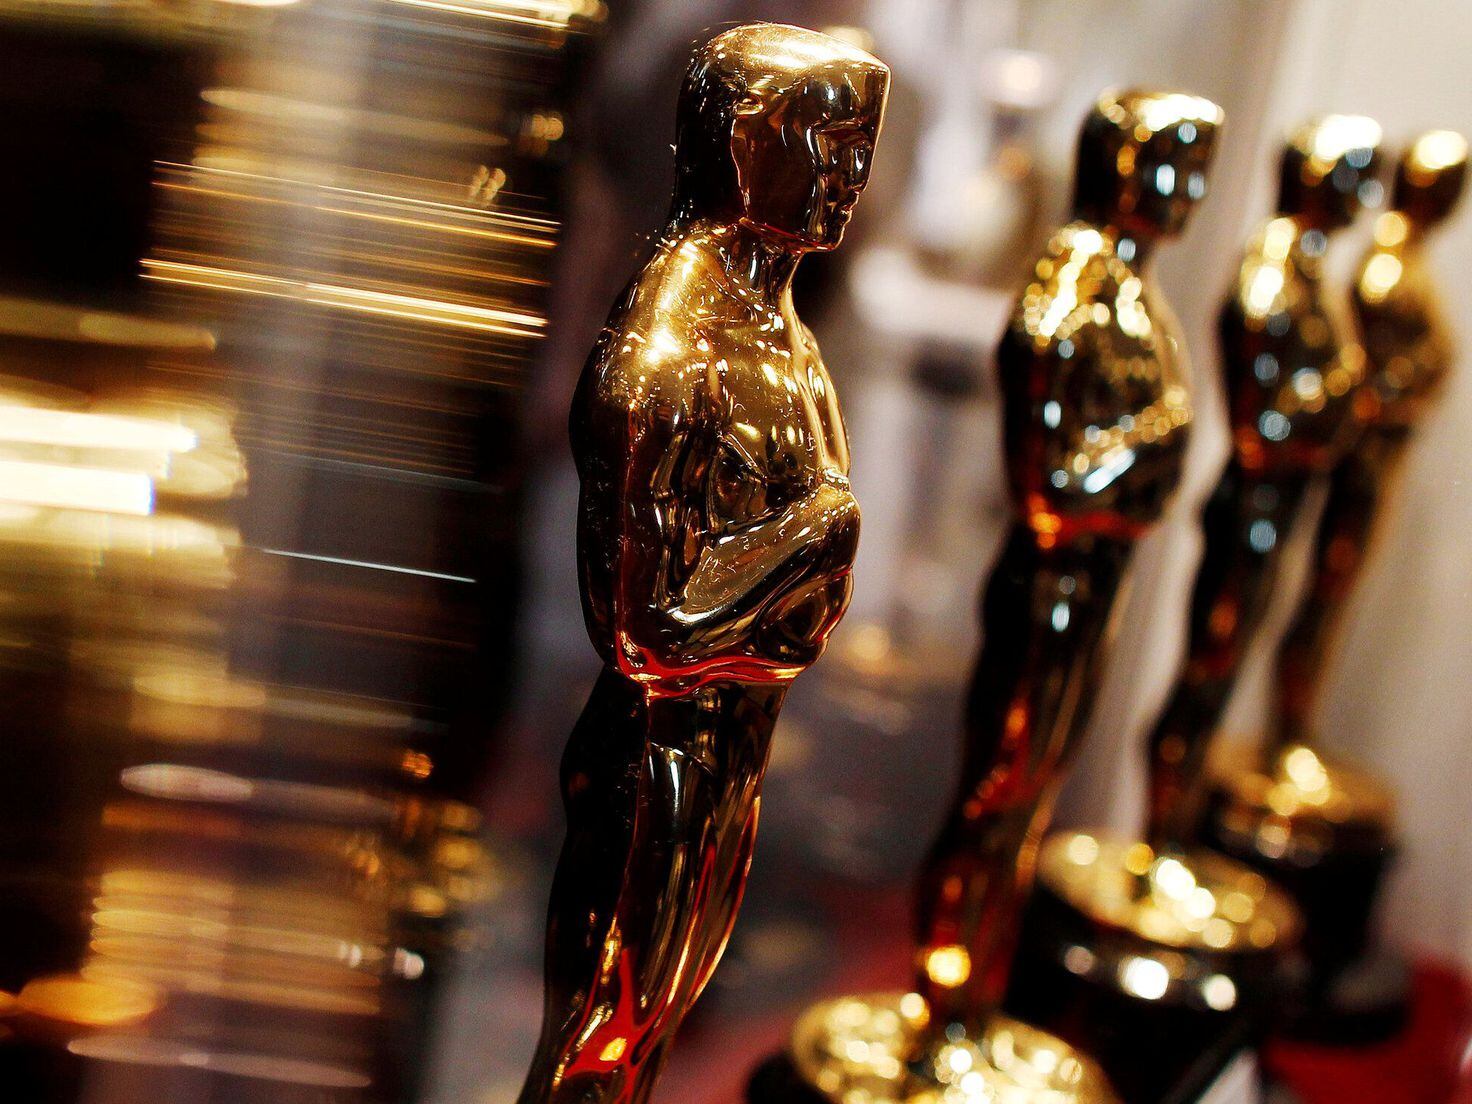 Oscar nominations 2023: Full list of nominees - Good Morning America